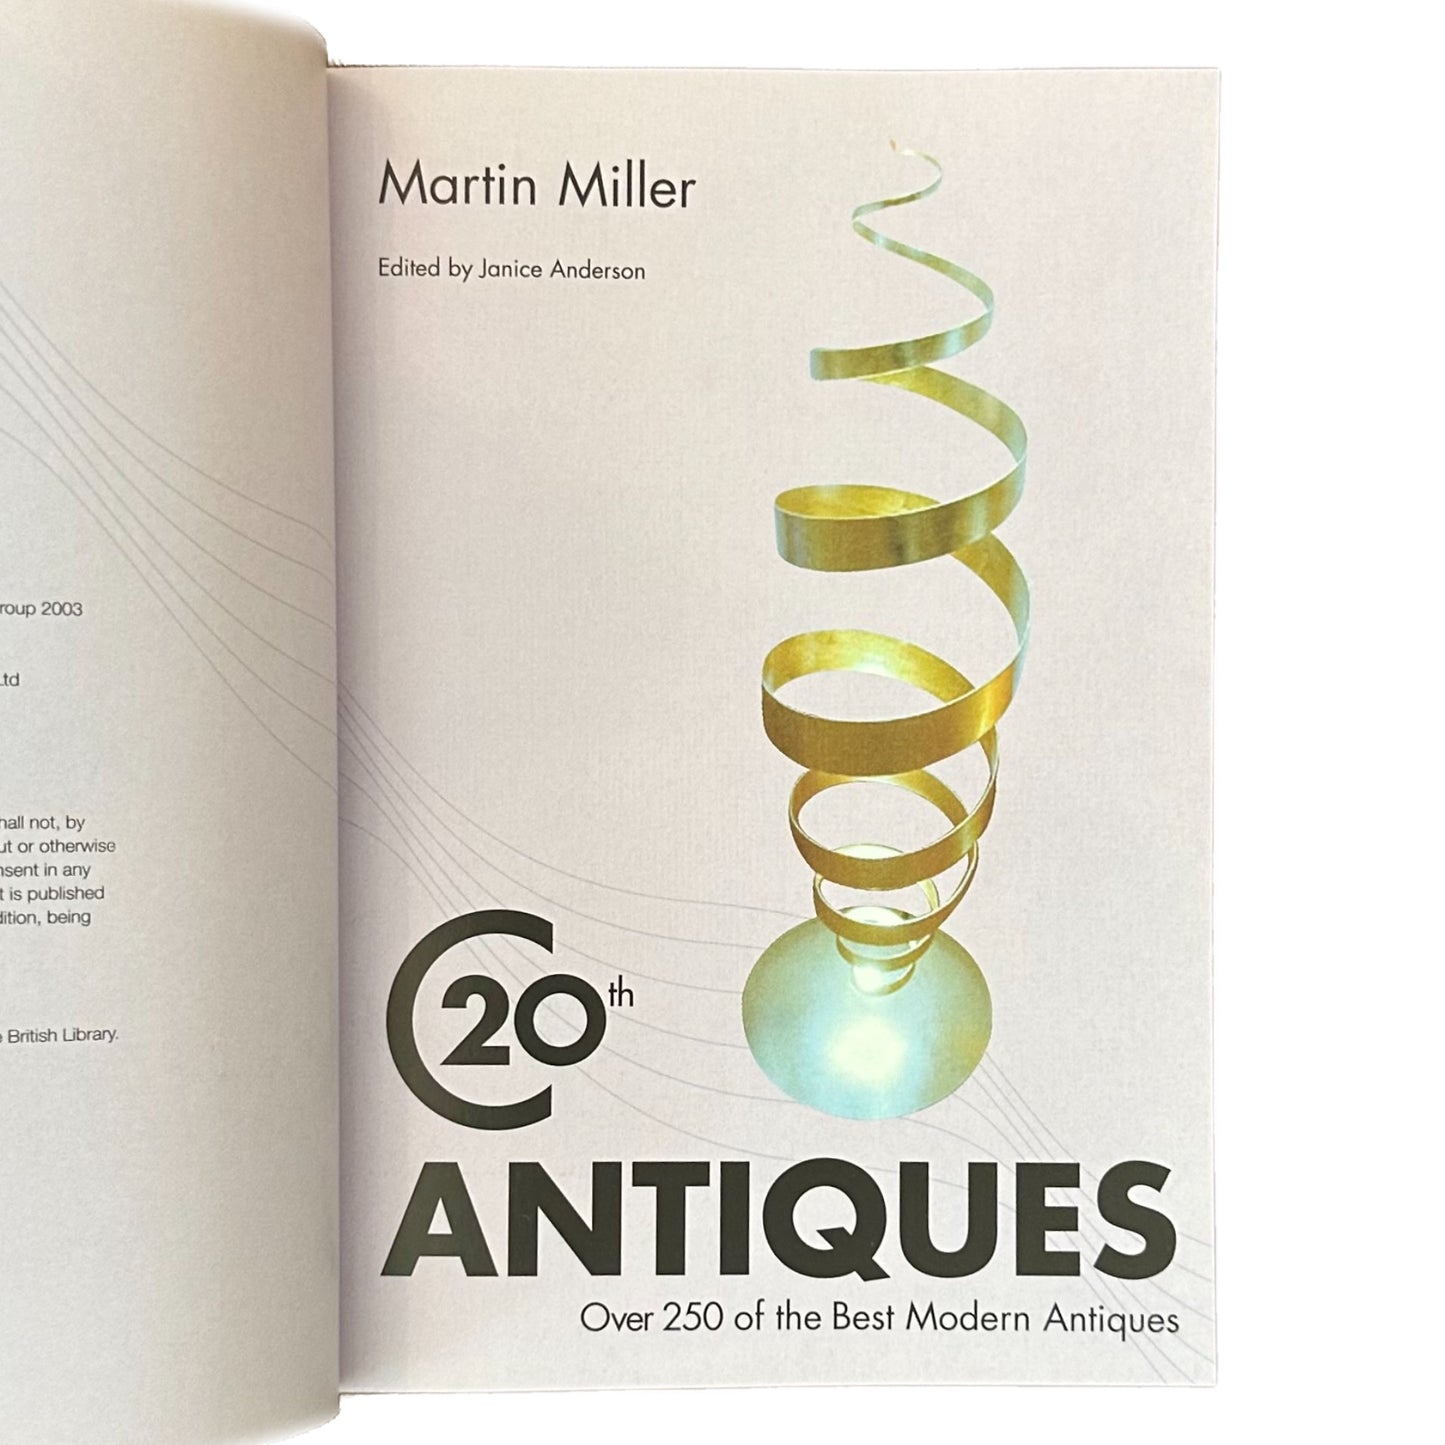 TWENTIETH CENTURY ANTIQUES (2003) by Martin Miller